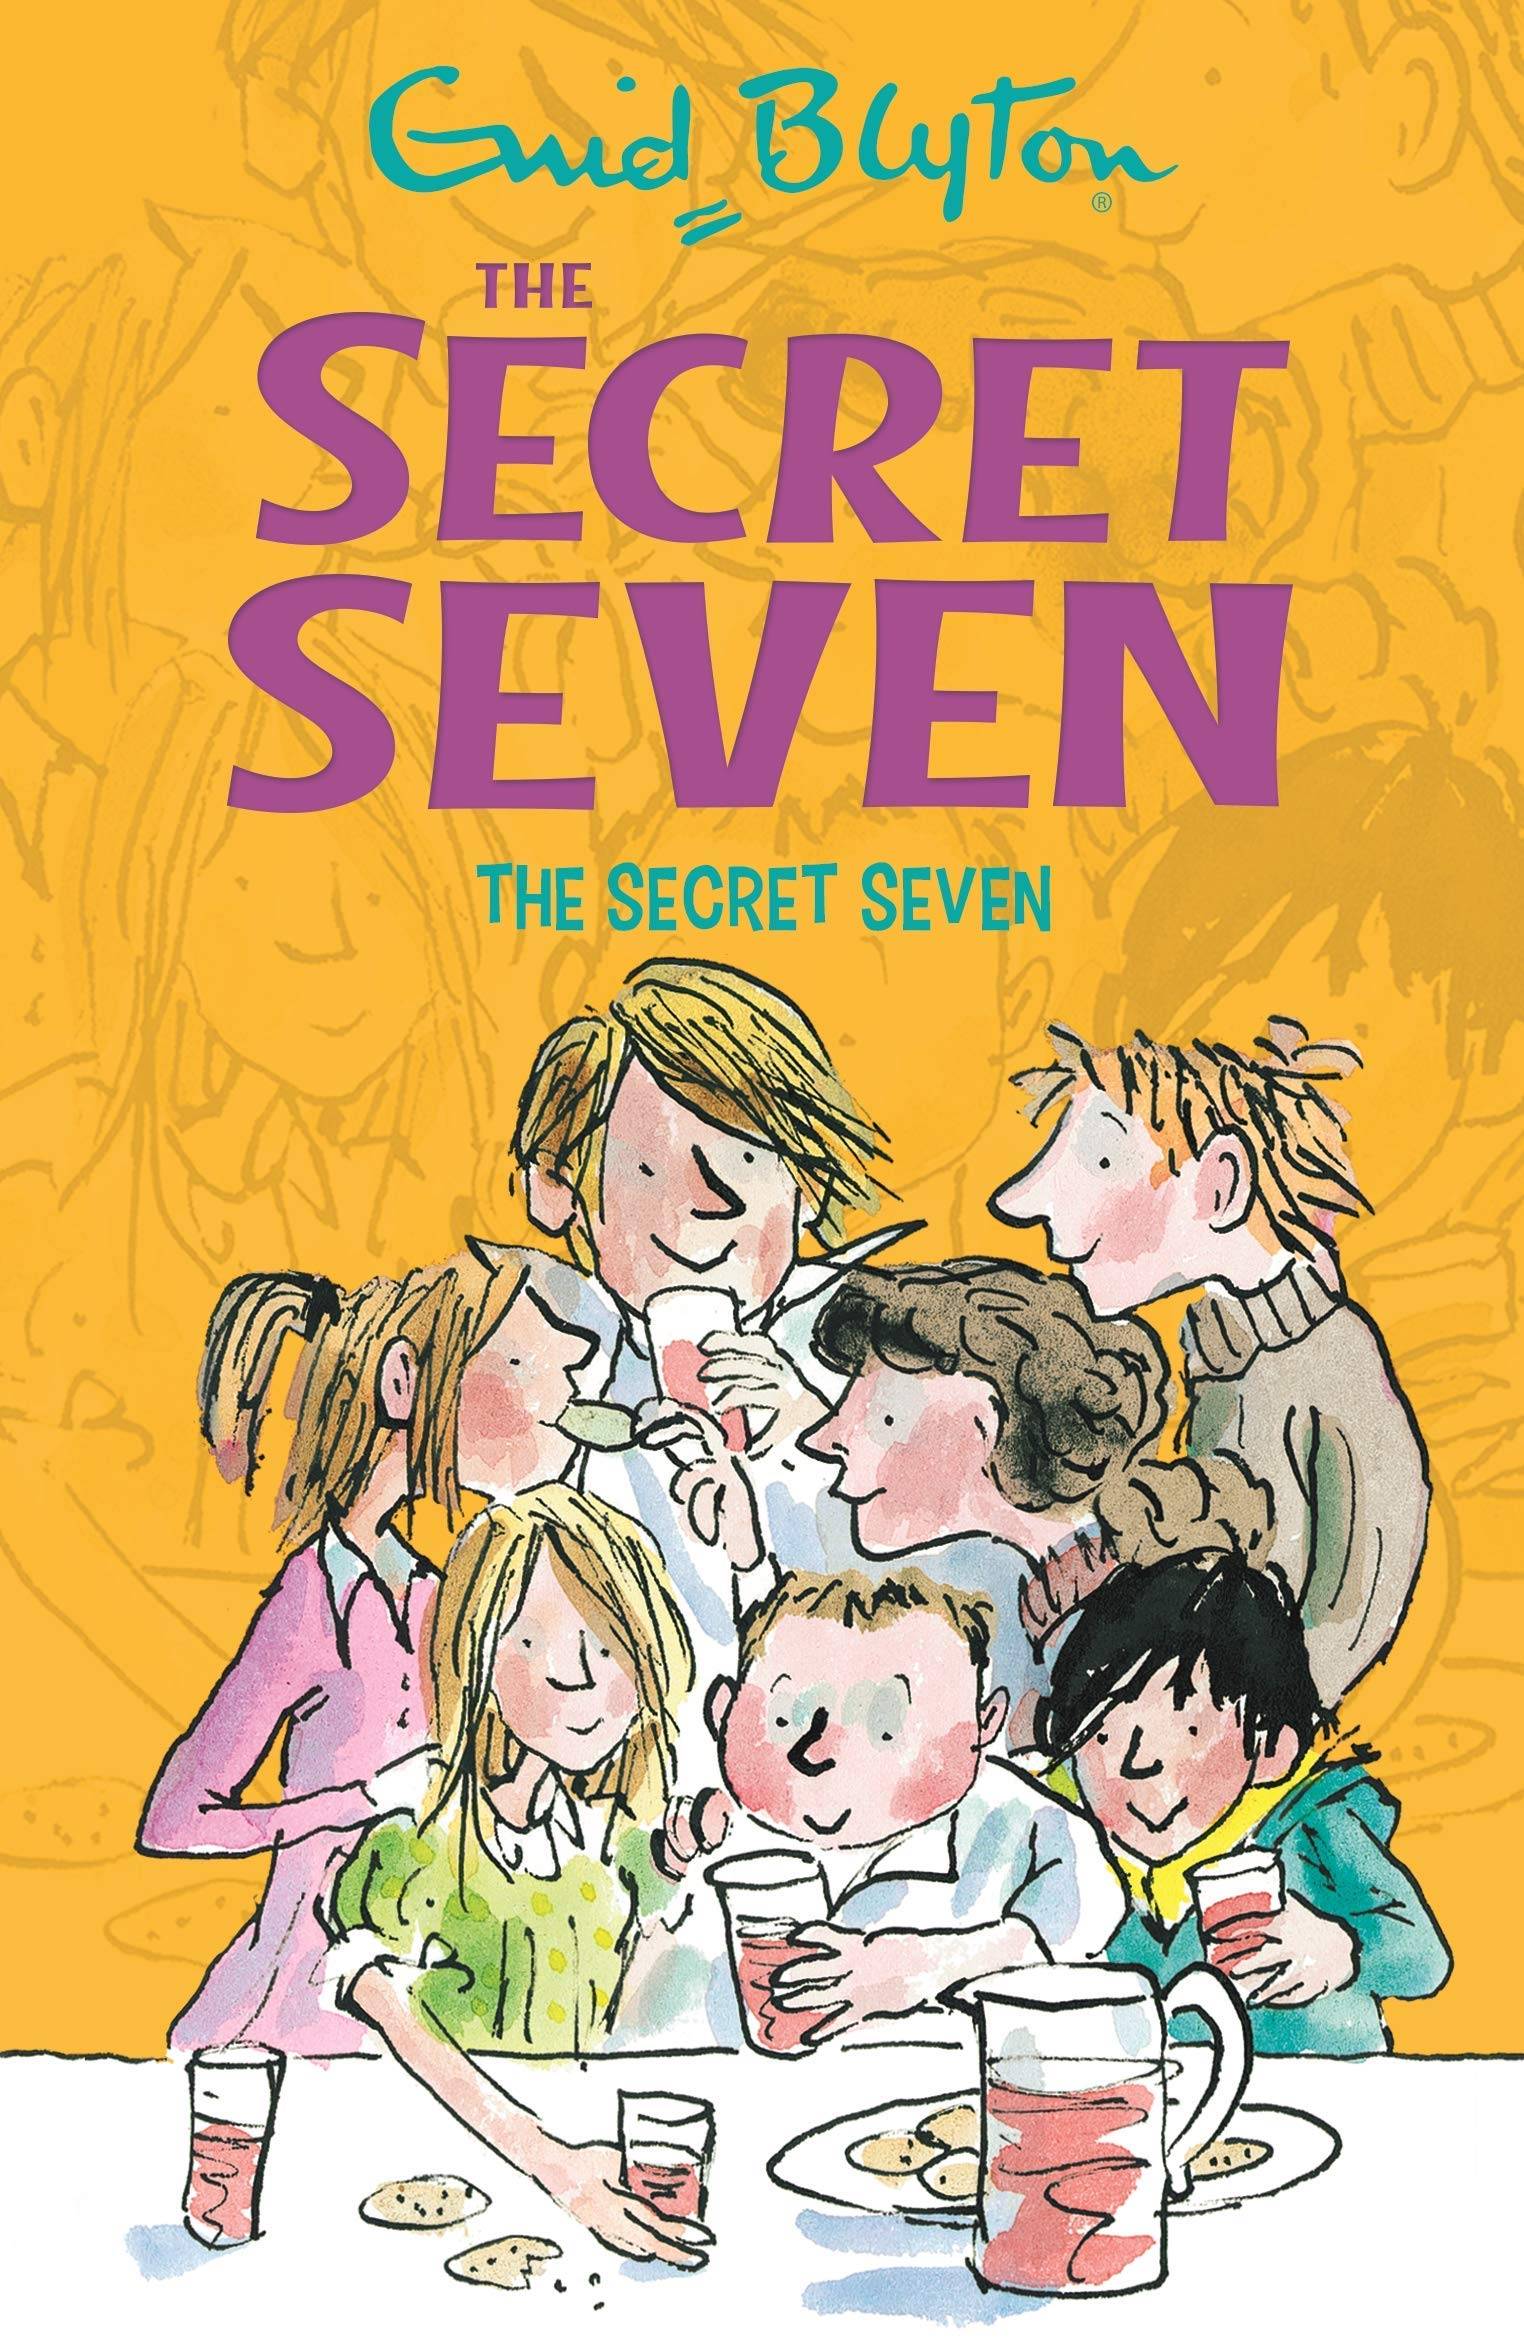 IMG : The Secret seven